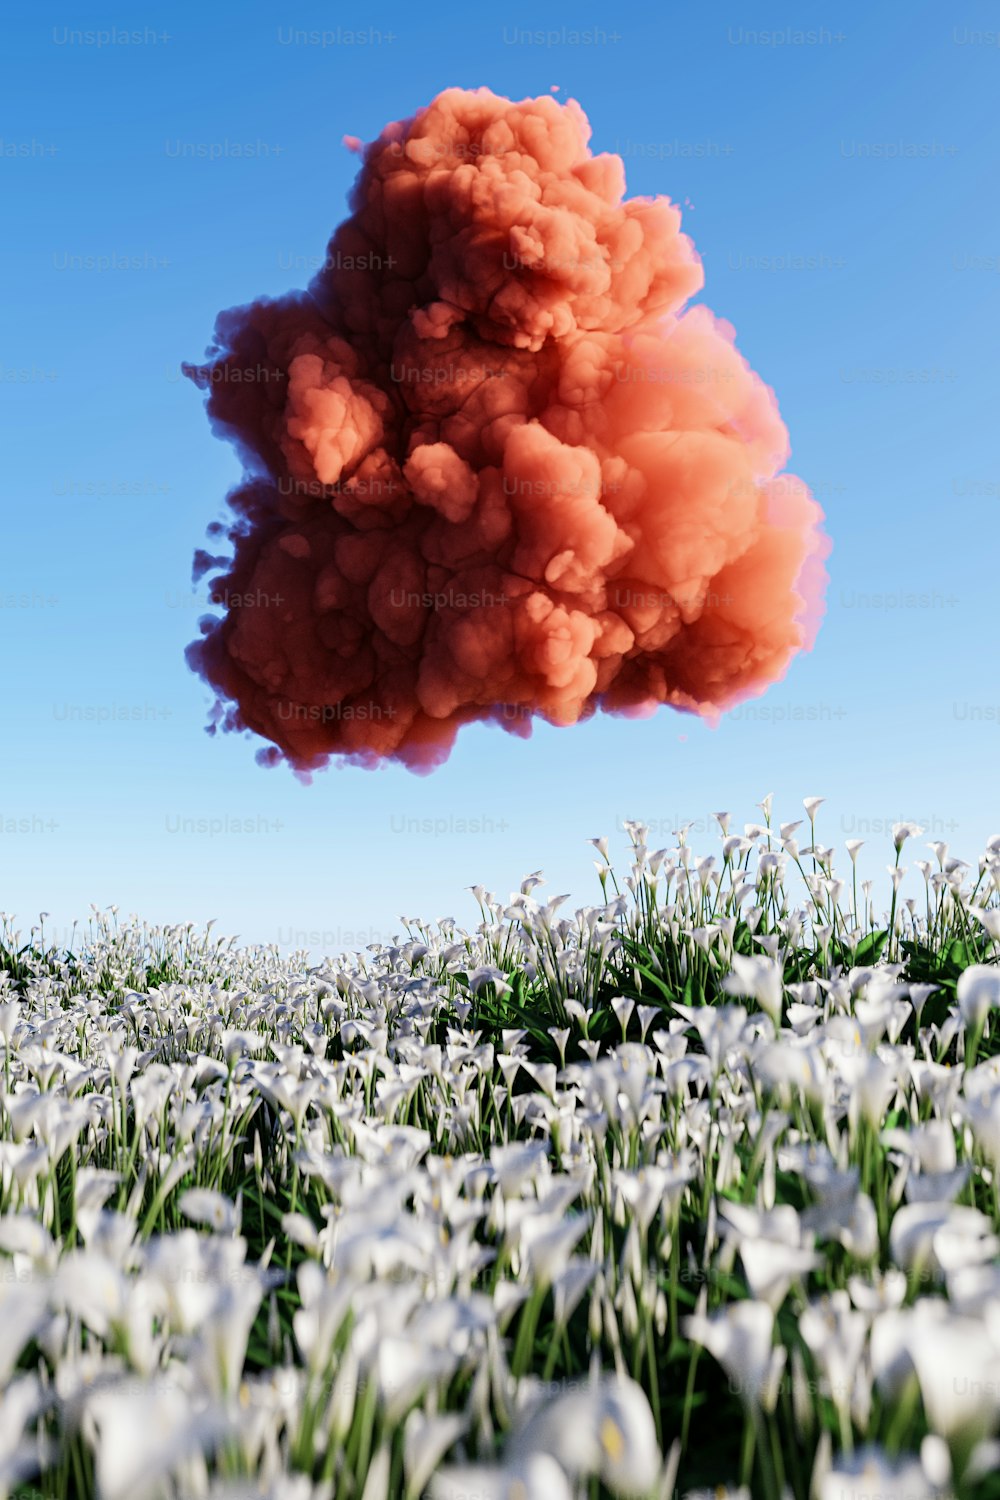 Eine Rauchwolke liegt über einem Blumenfeld in der Luft